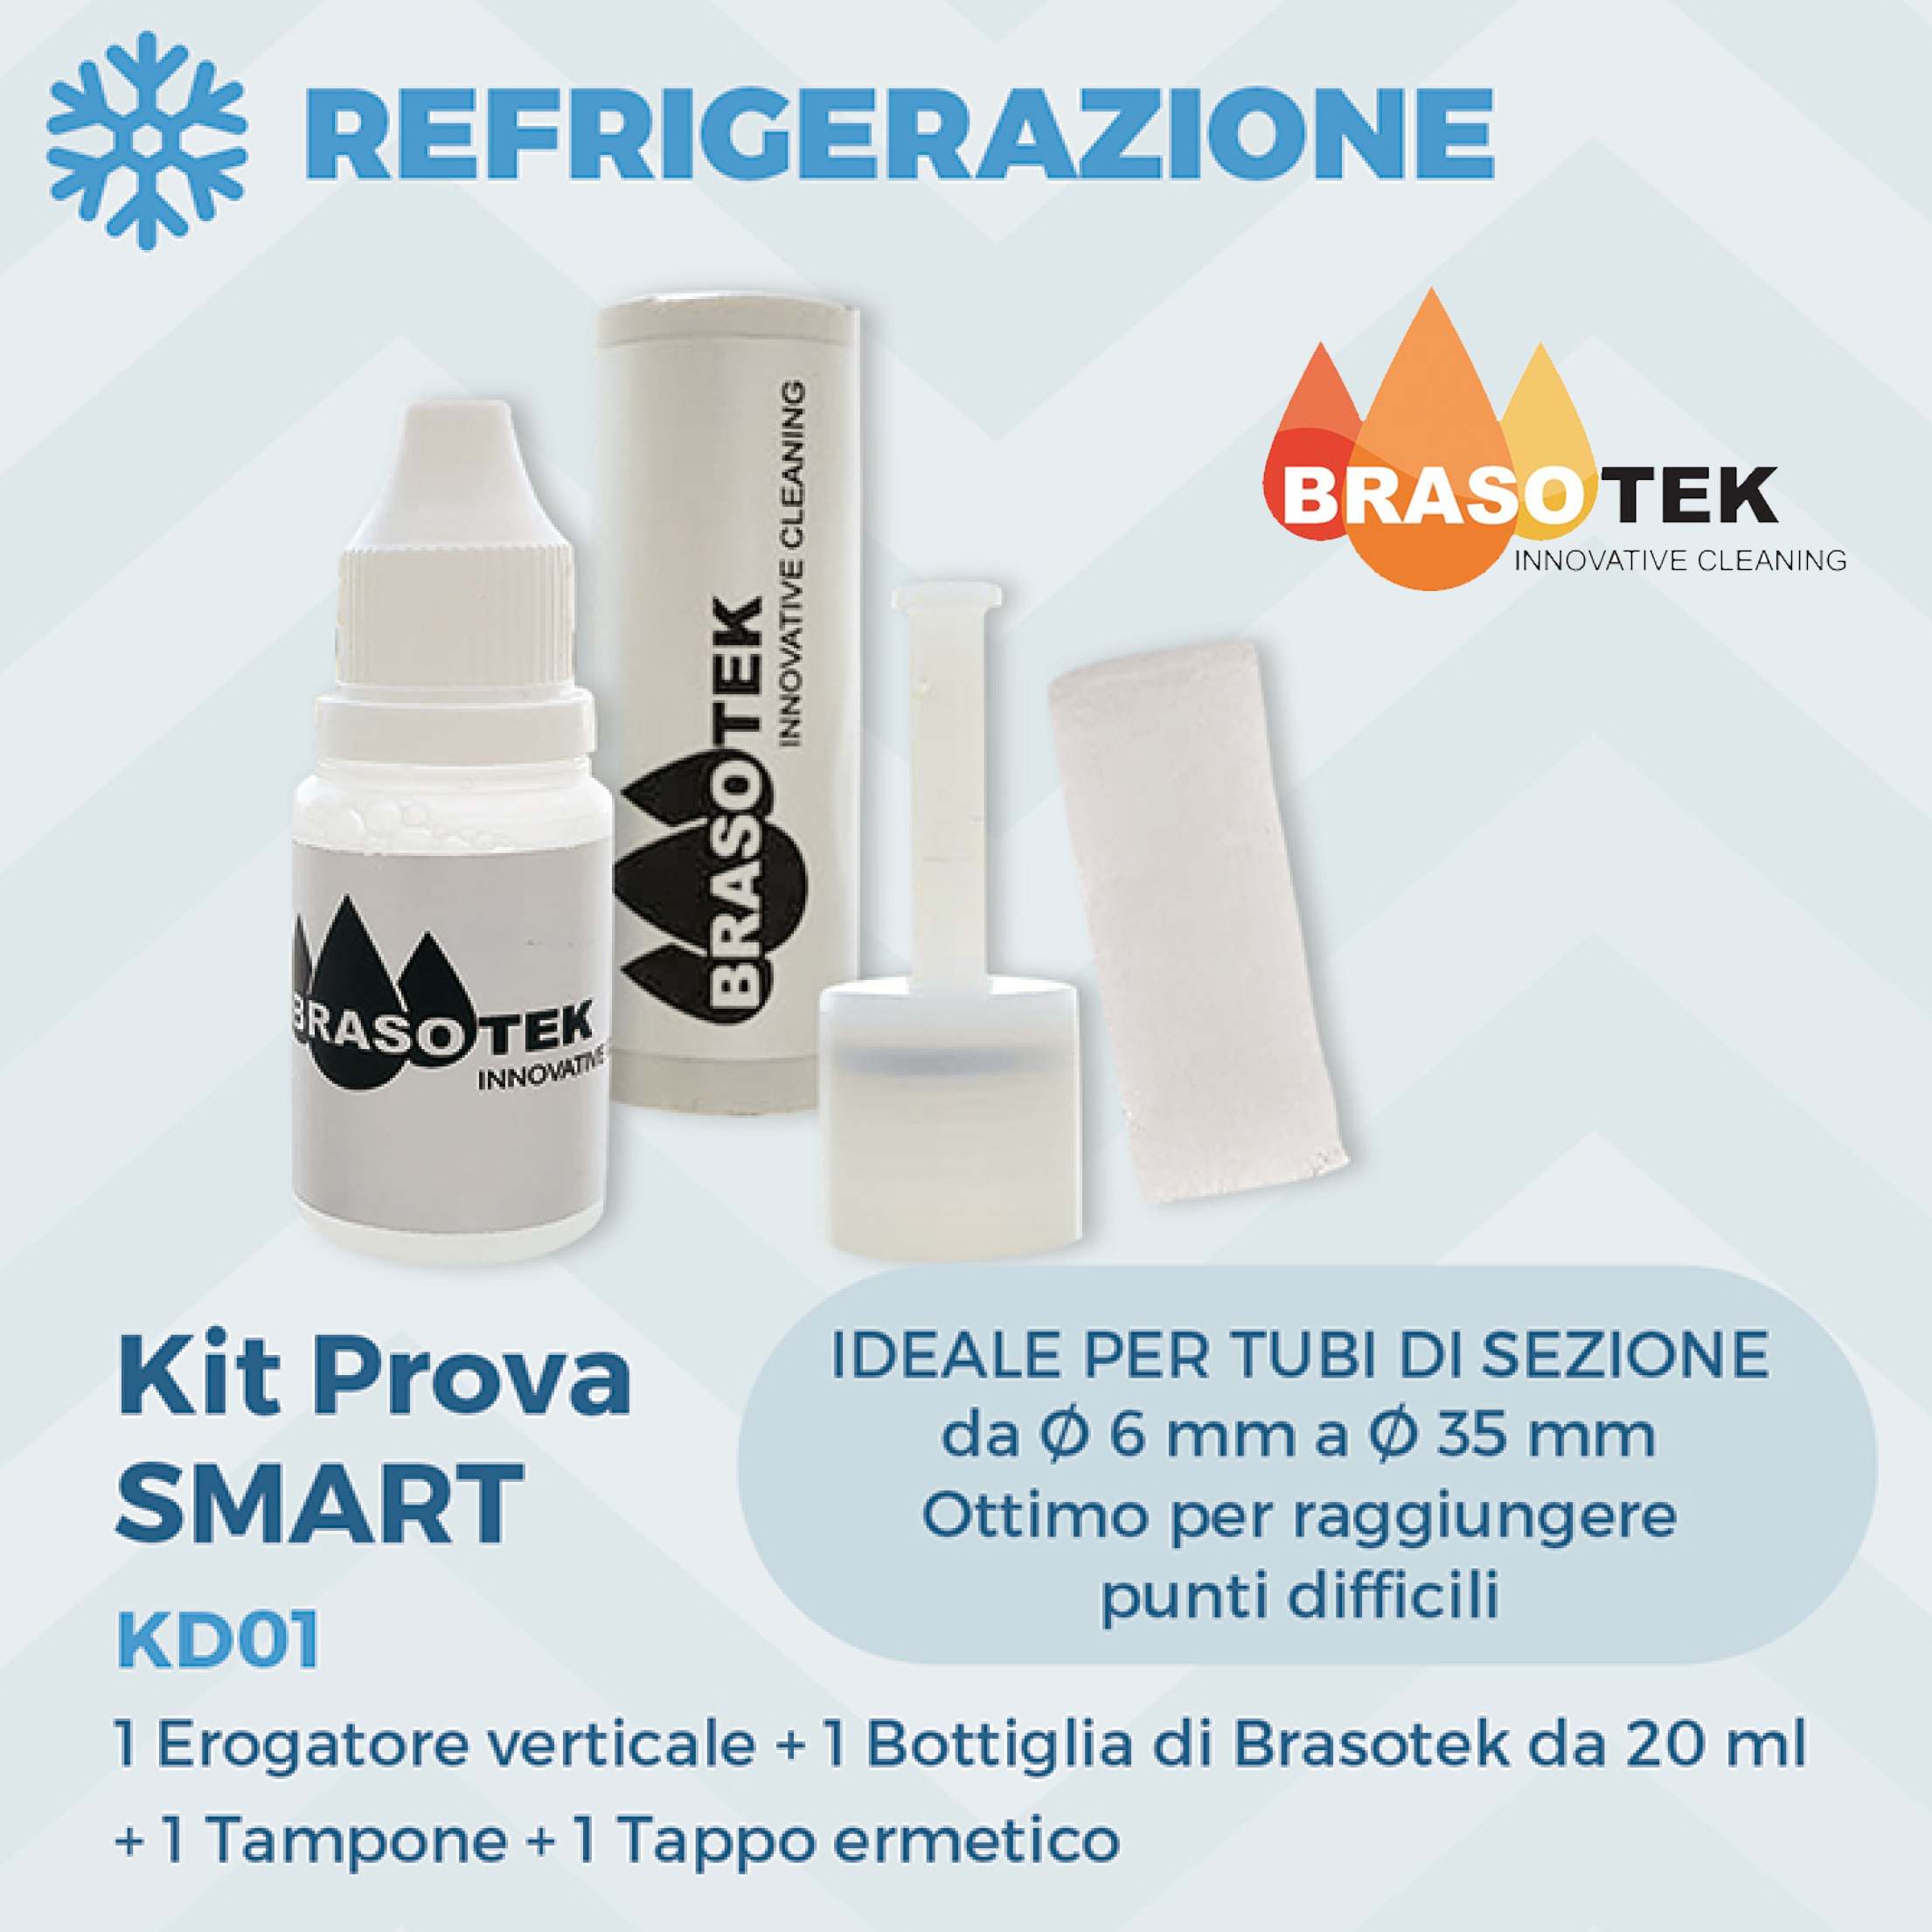 Brasotek - Kit Smart codice KD01 - Composto da 1 flacone da 20 ml, erogatore verticale, tampone, tappo ermetico - adatto per tubi diametro da 6 a 35 mm. - Foto 1 